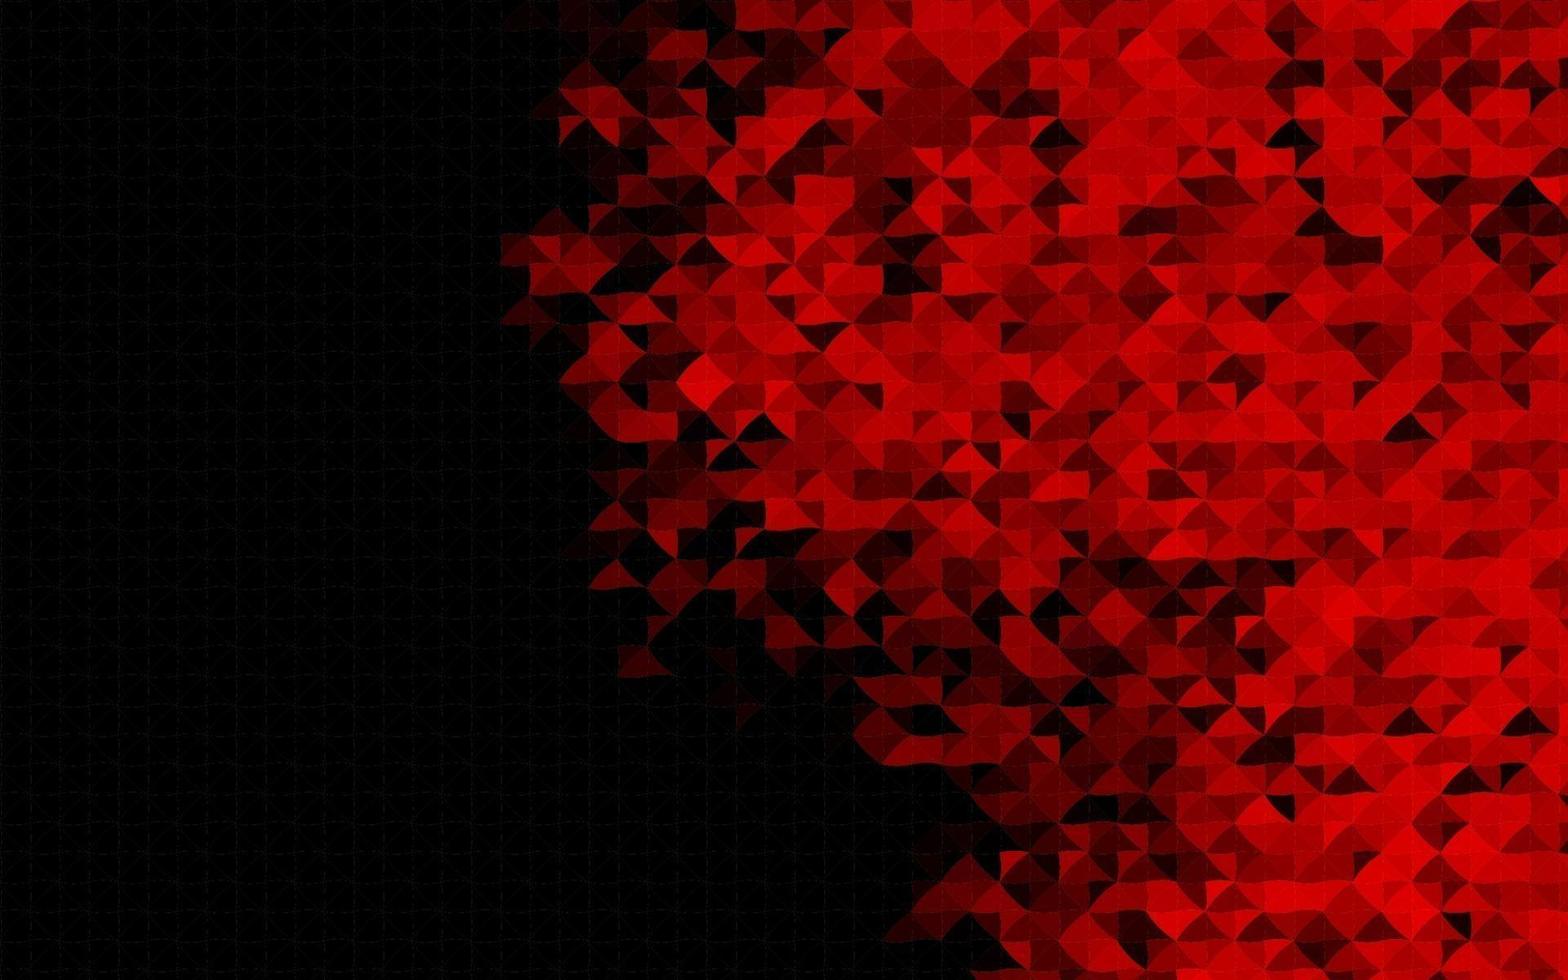 sfondo vettoriale rosso scuro con linee, triangoli.